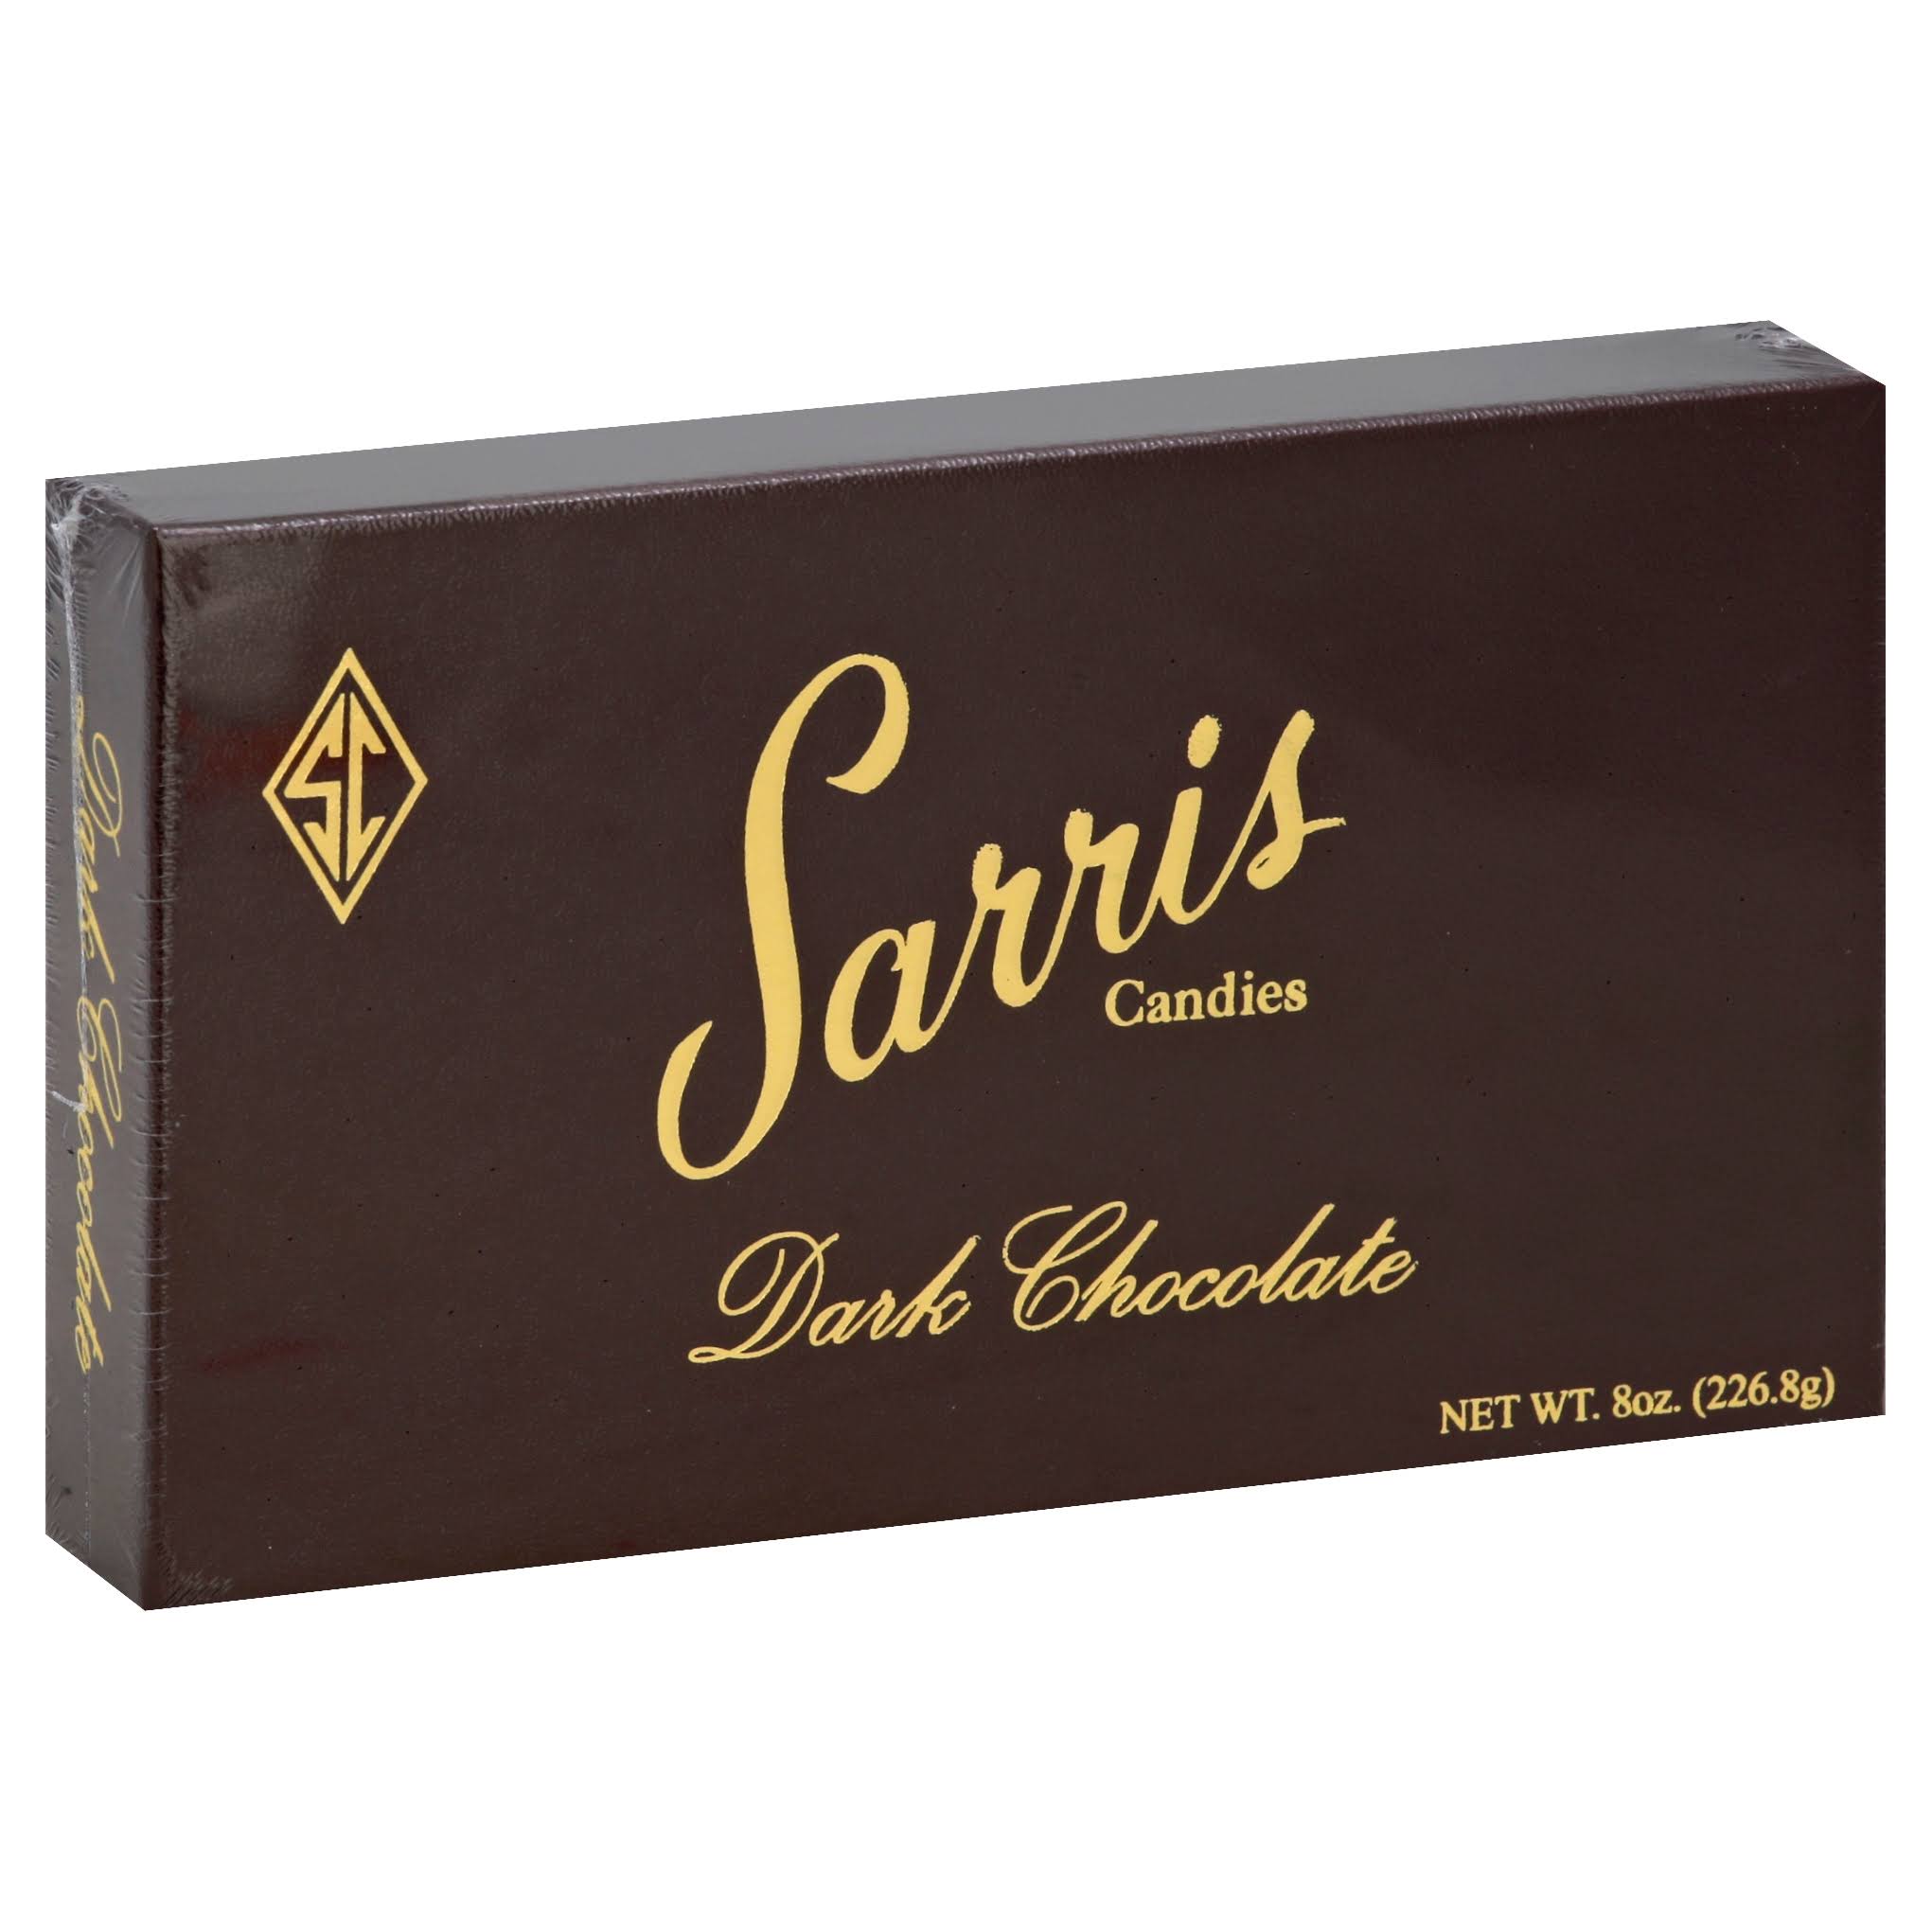 Sarris Candies Dark Chocolate - 8 oz